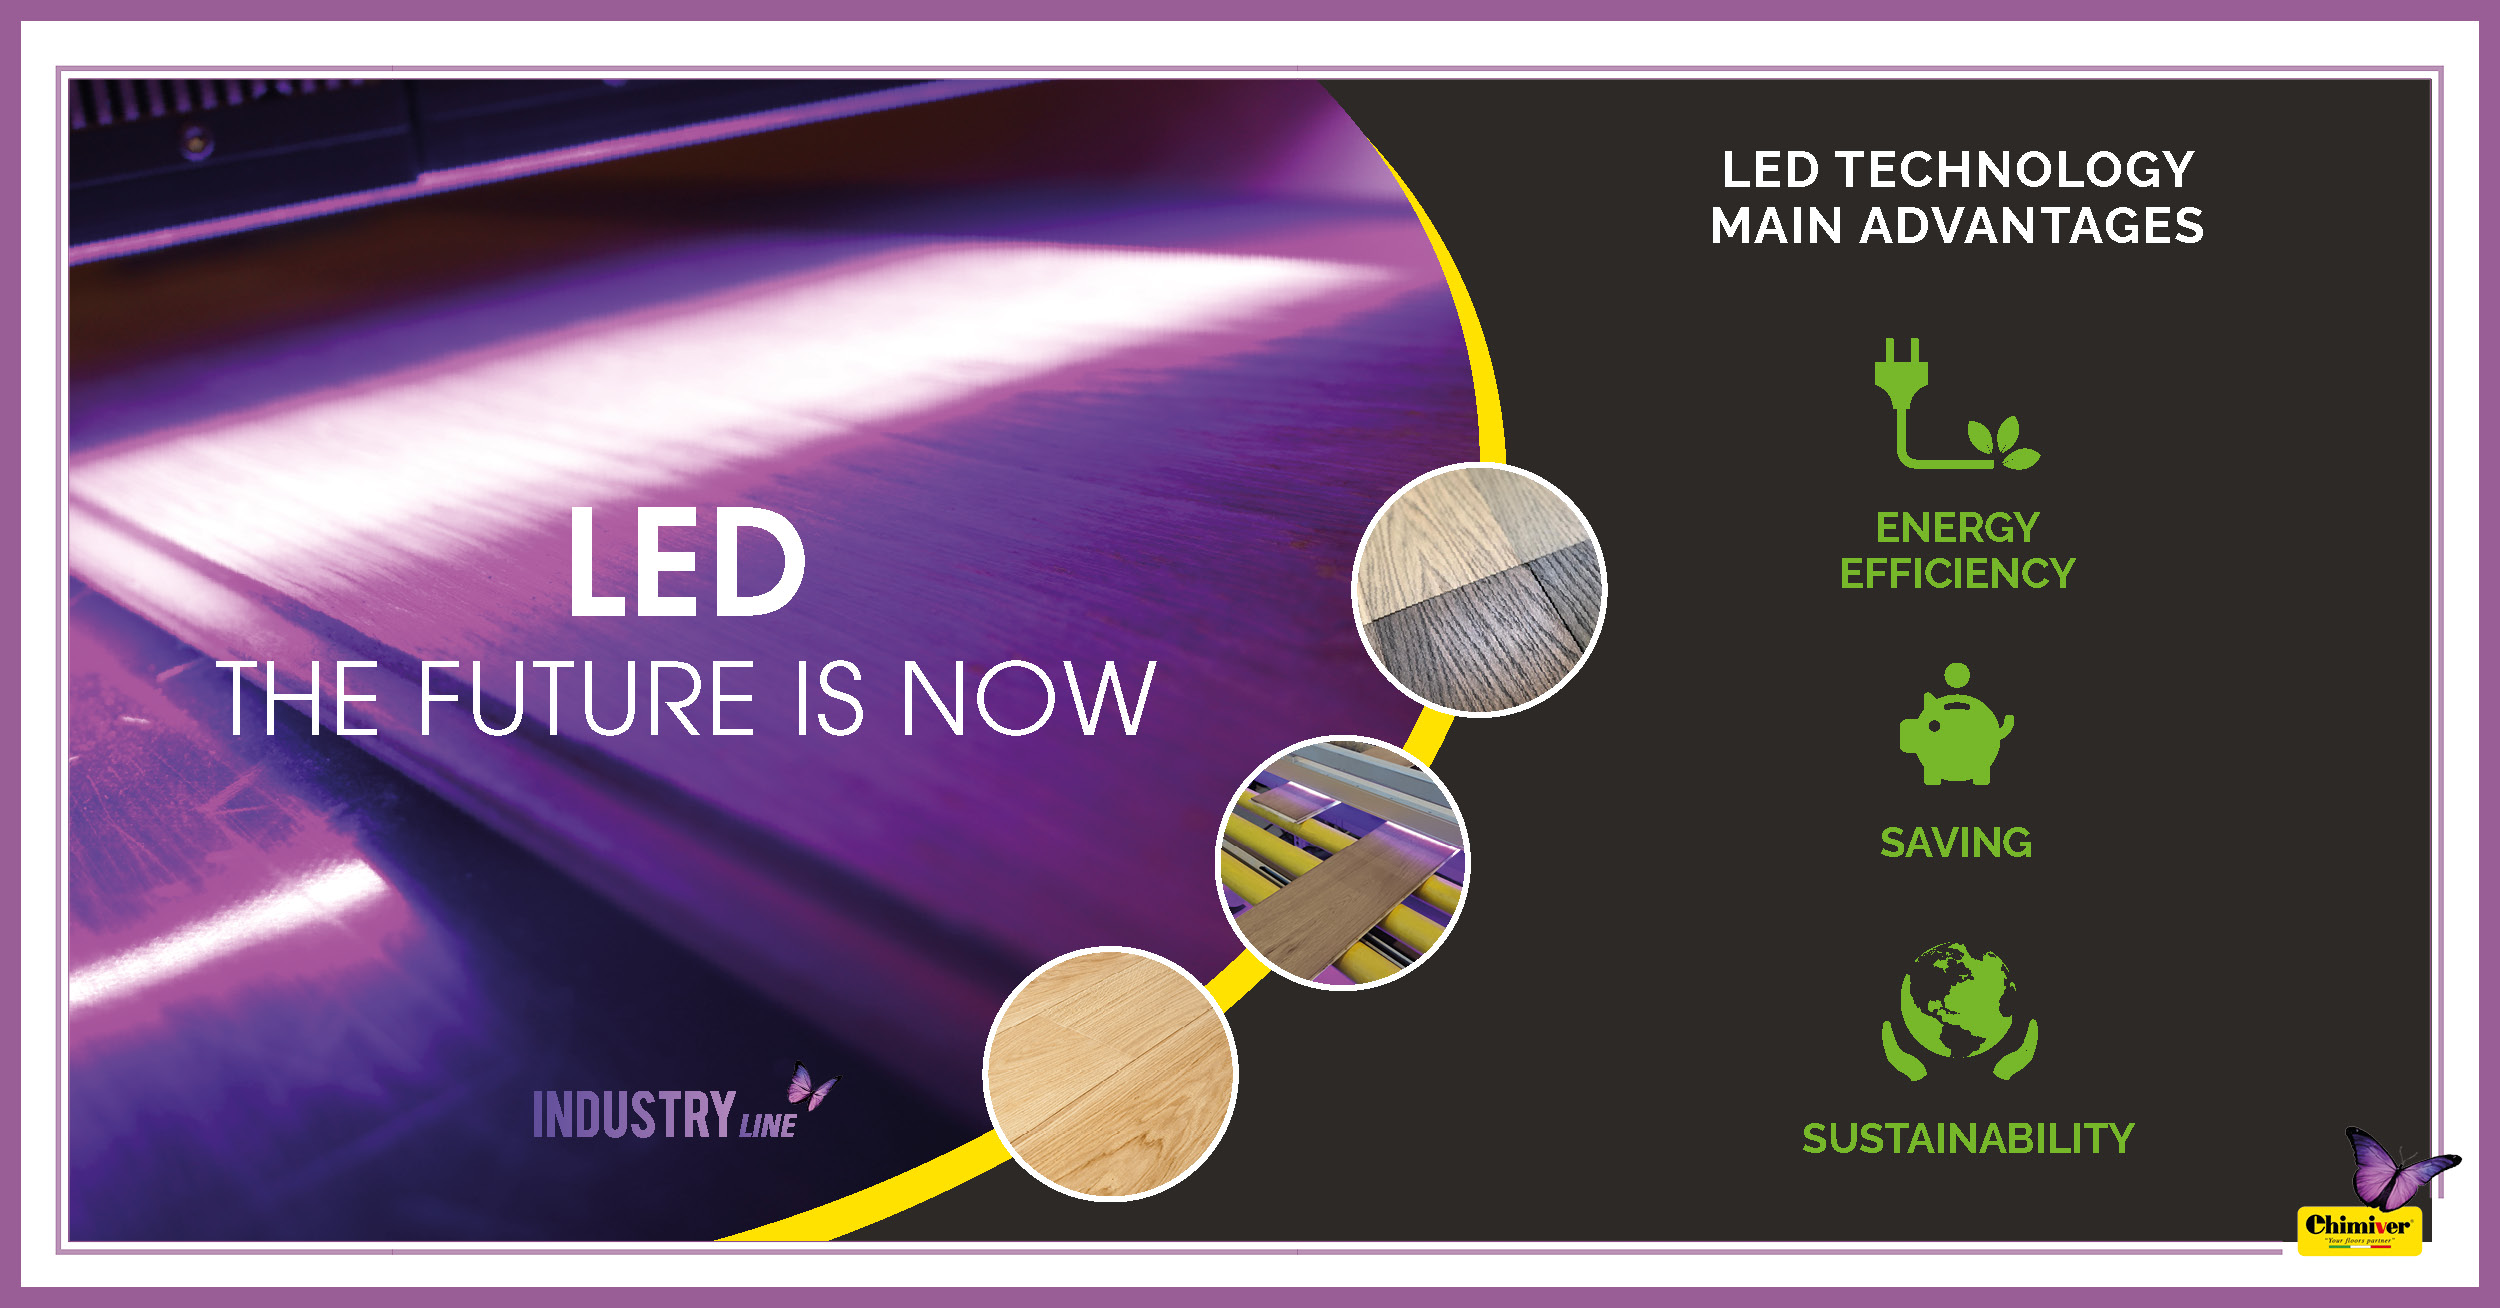 LED, EL FUTURO YA ESTÁ AQUÍ – Productos de revestimiento Chimiver